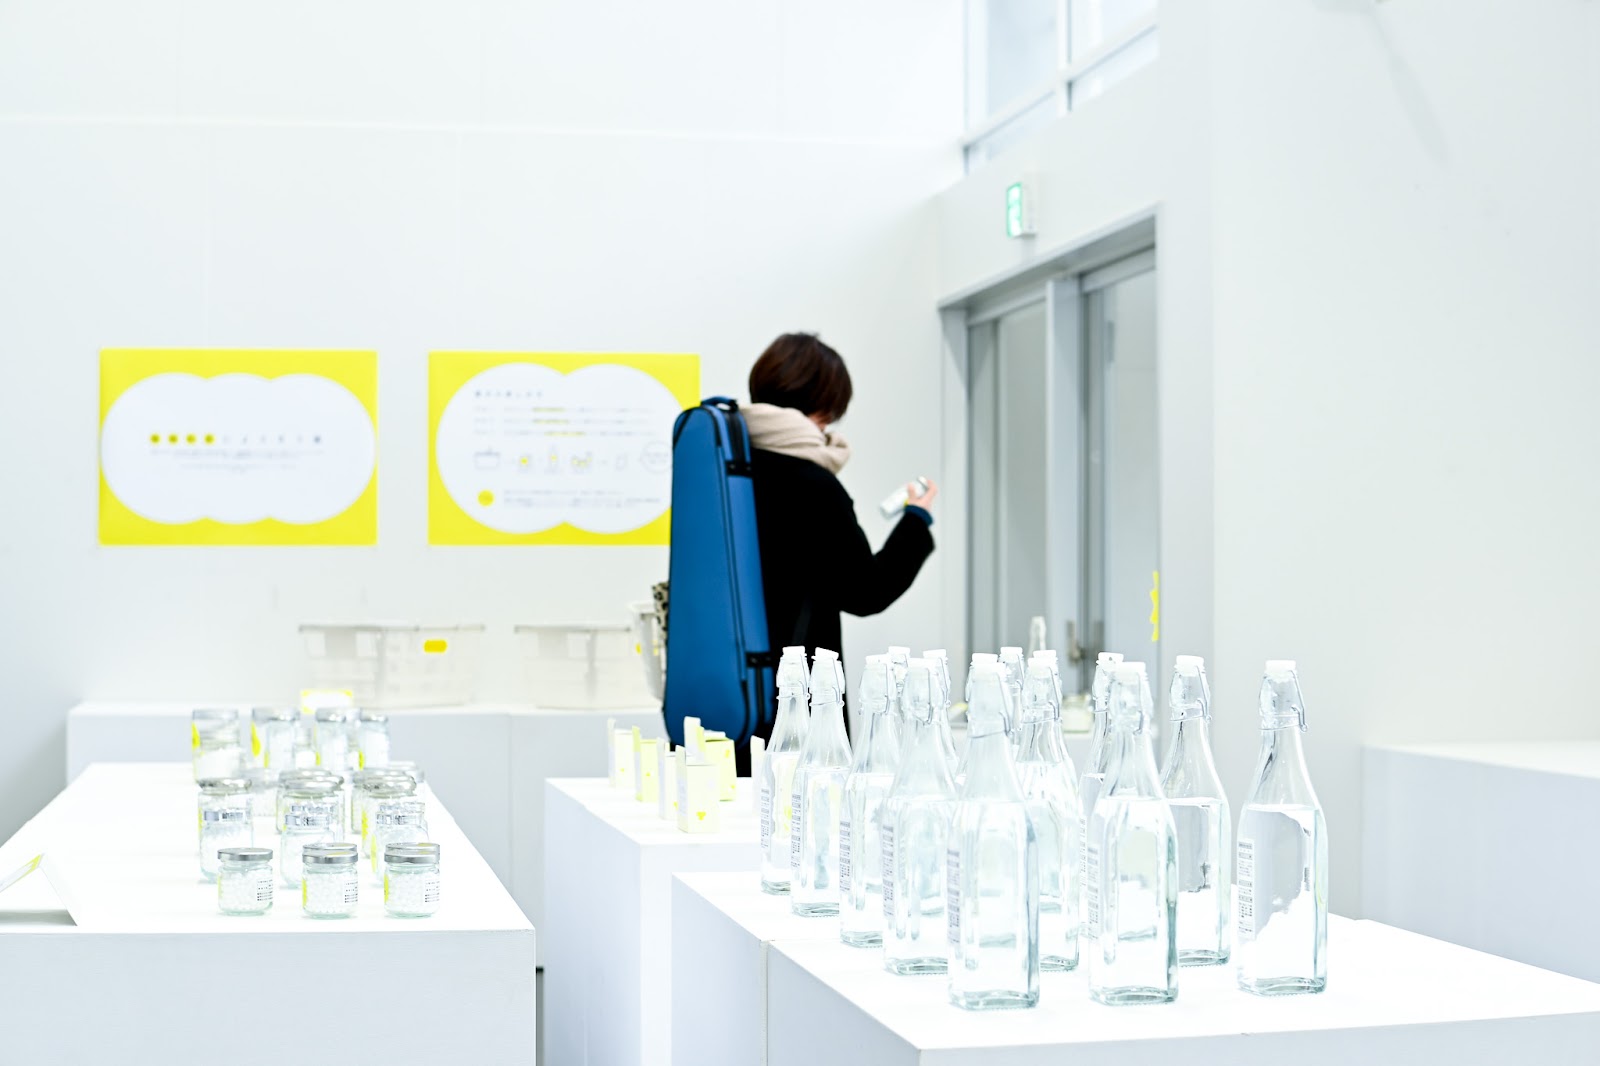 婚姻制度をテーマにした展示会会場の写真。白い空間に、黄色いデザインのパネルが貼られ、展示台には様々な形の瓶が並べられている。